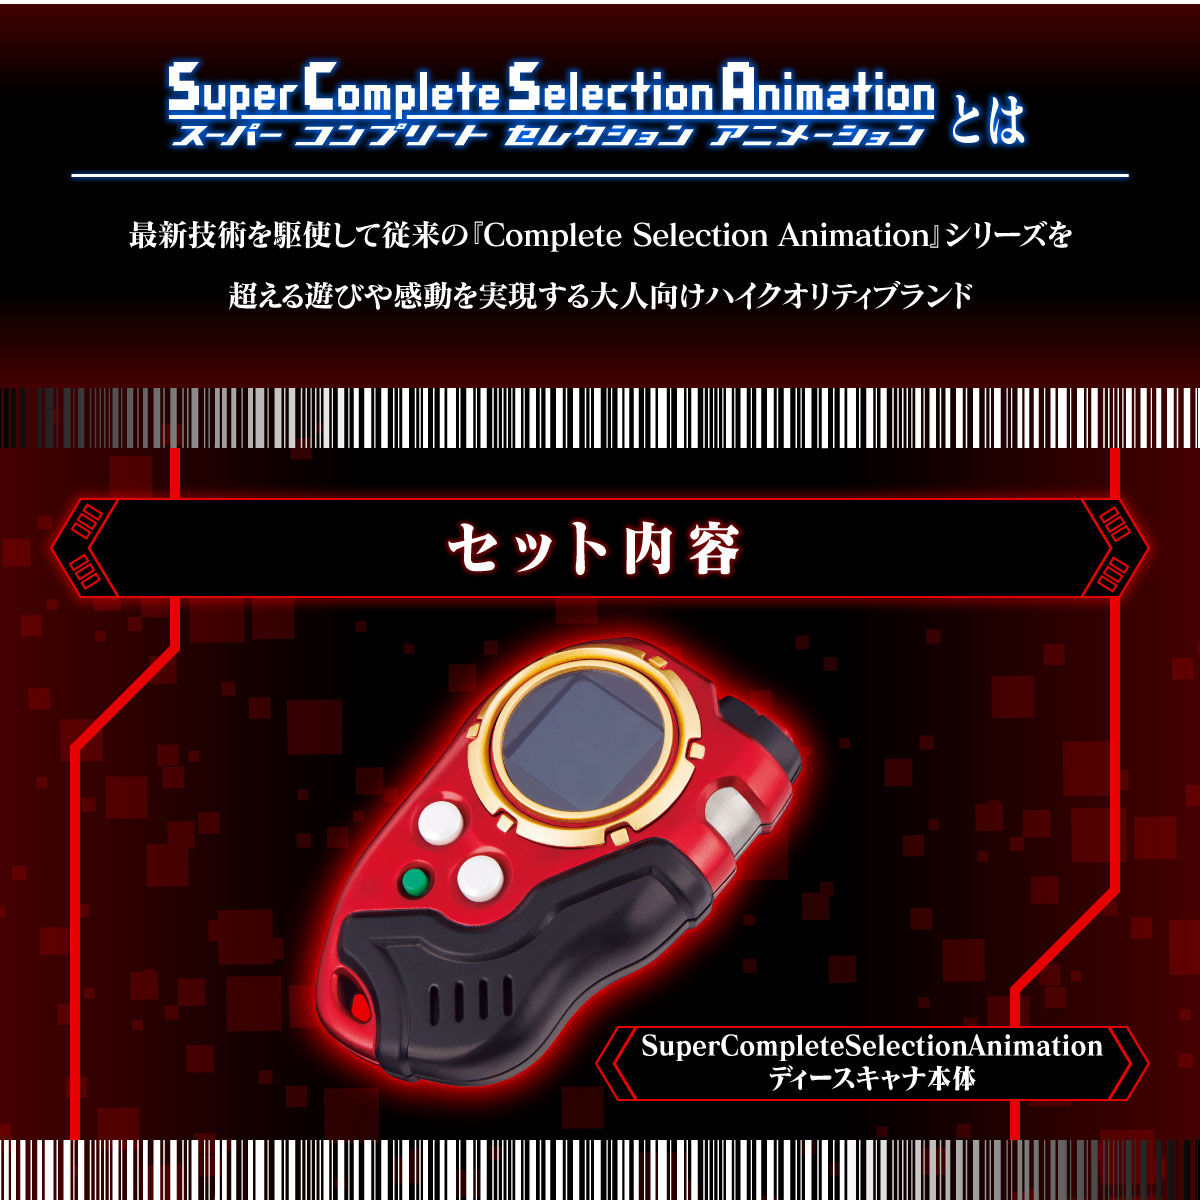 【限定販売】デジモンフロンティア Super Complete Selection Animation『ディースキャナver.ULTIMATE RED』変身なりきり玩具-002